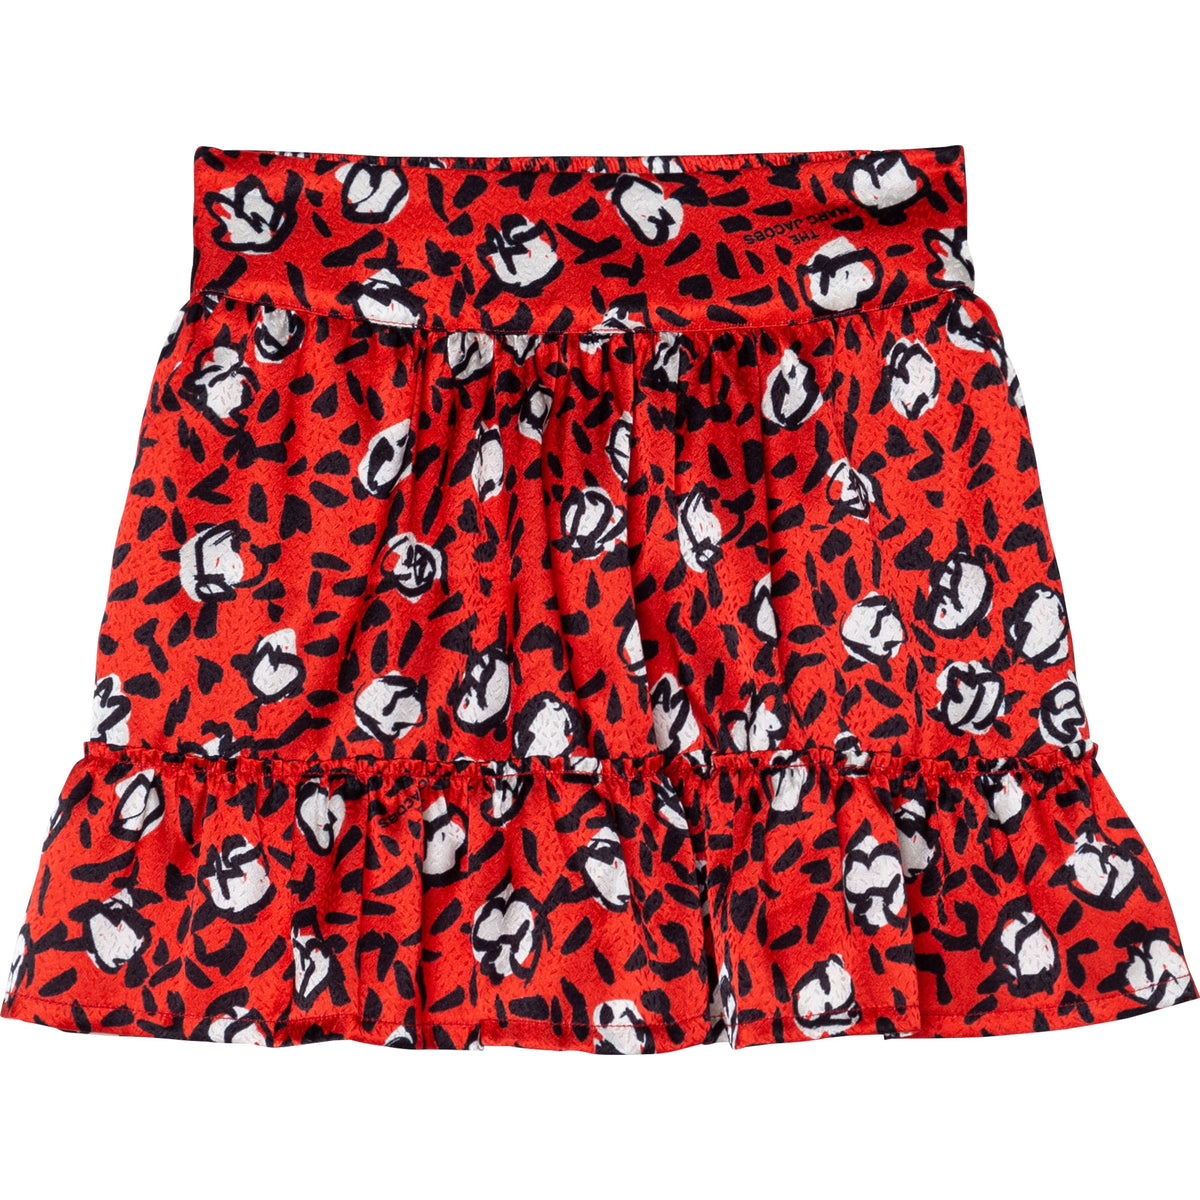 Printed Ruffled Skirt - Red